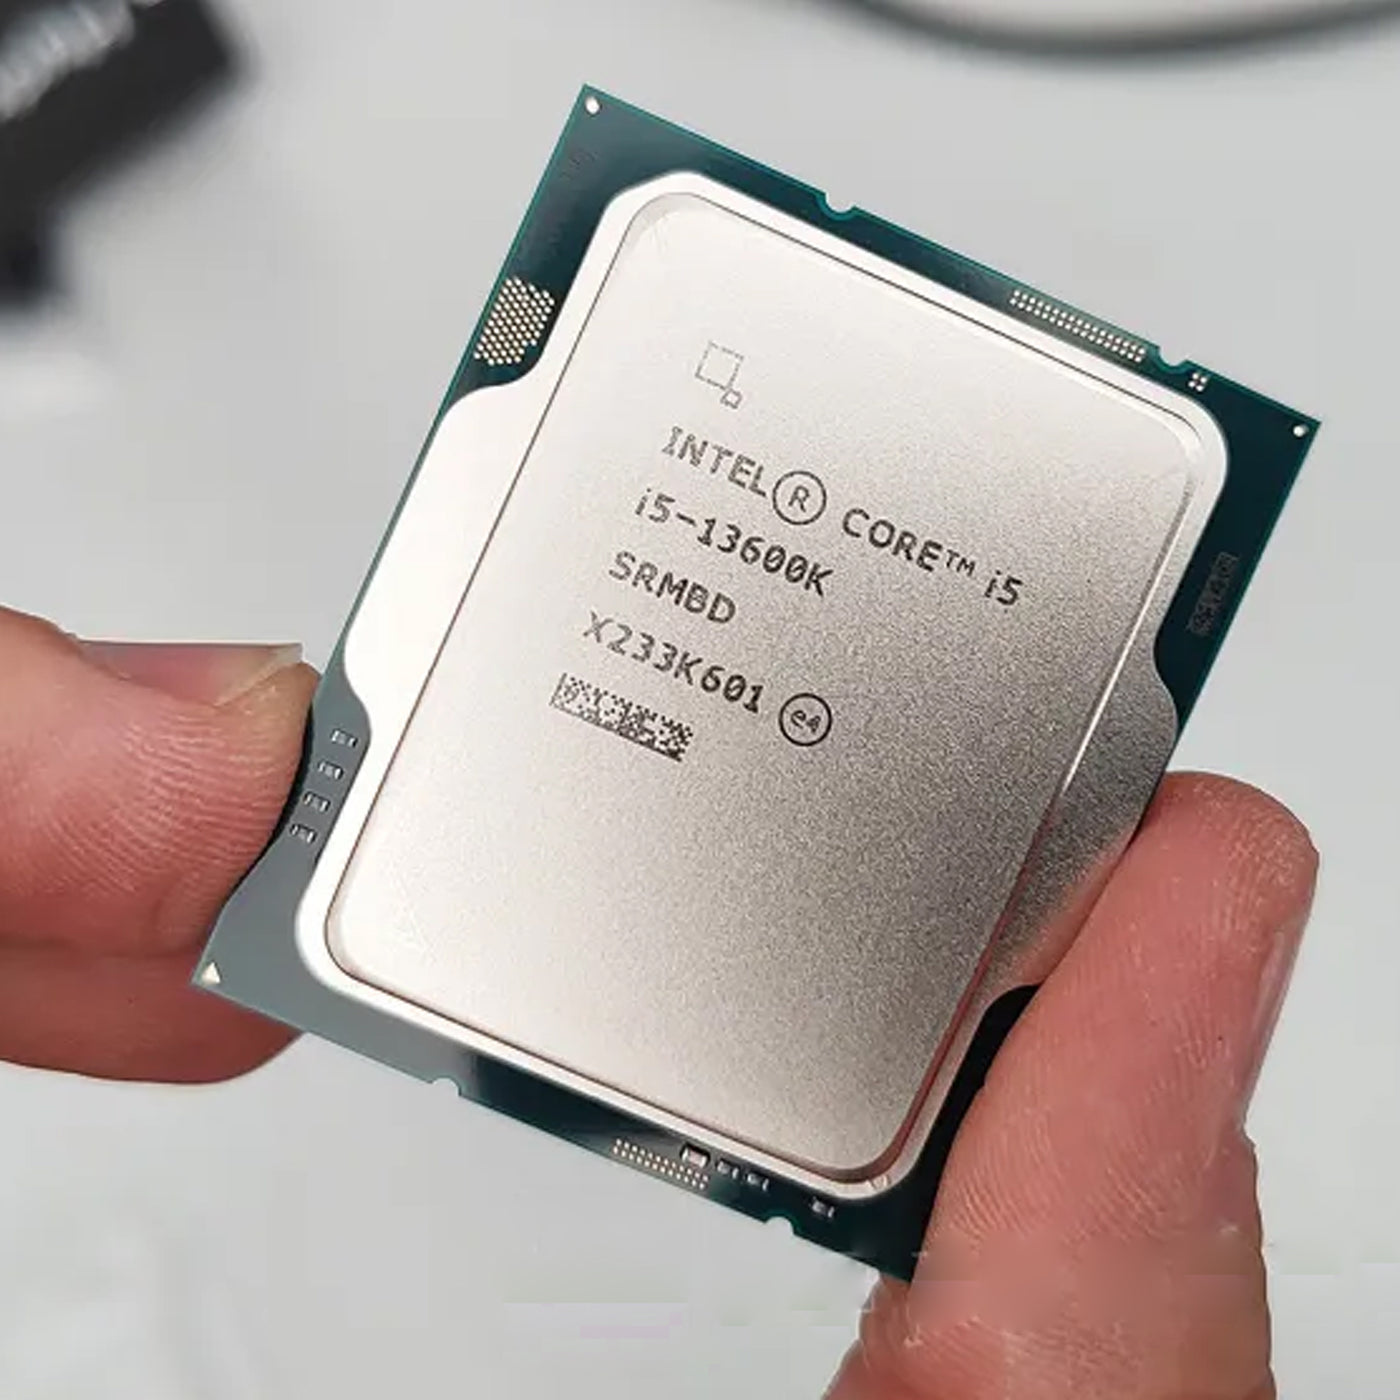 Procesador Intel Core i5-13600K 3.50/5.10GHz /24MB LGA 1700